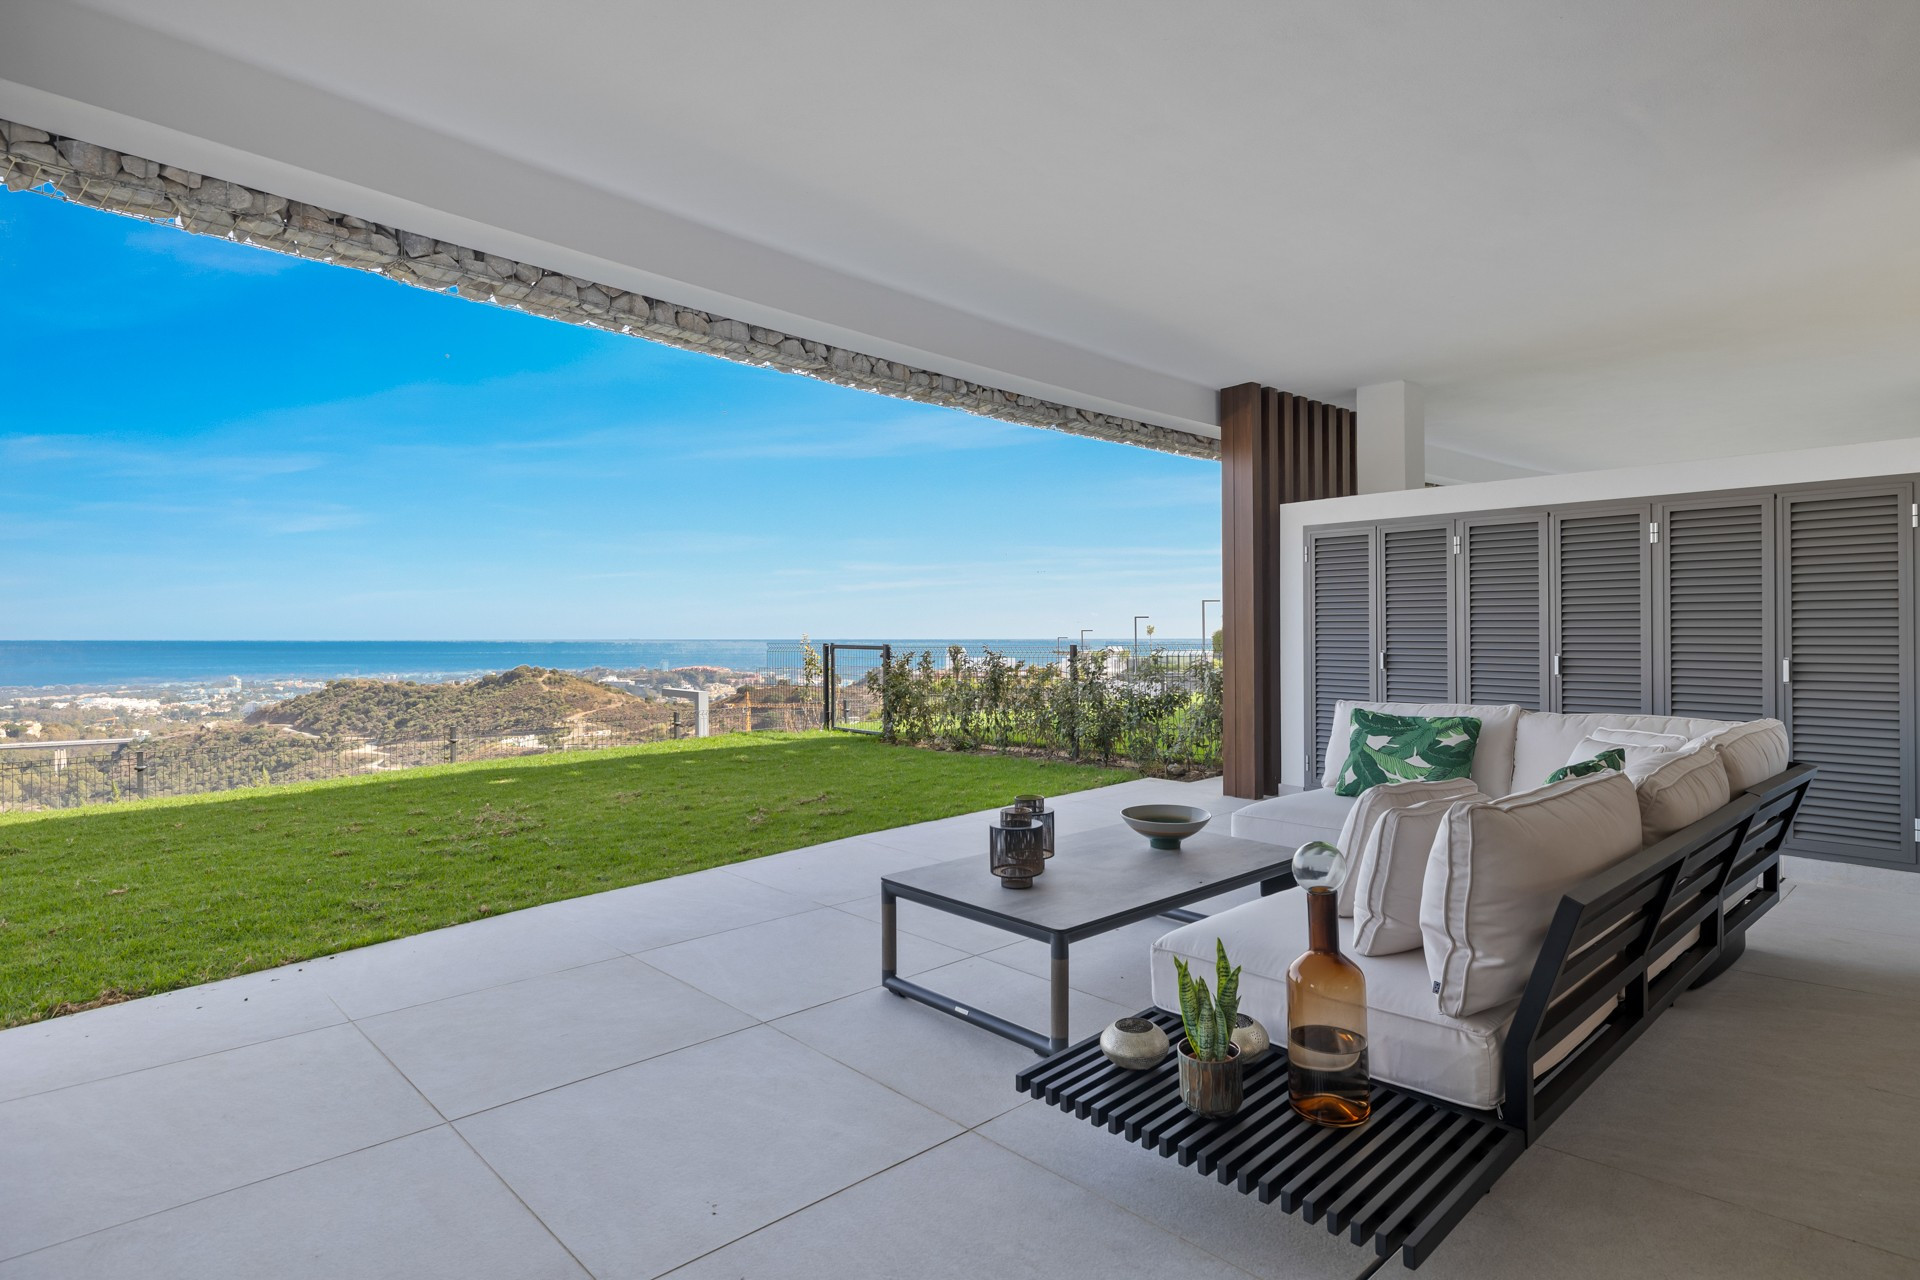 Apartamento en planta baja de alta calidad situado en Real de la Quinta con increíbles vistas panorámicas abiertas al mar Mediterráneo